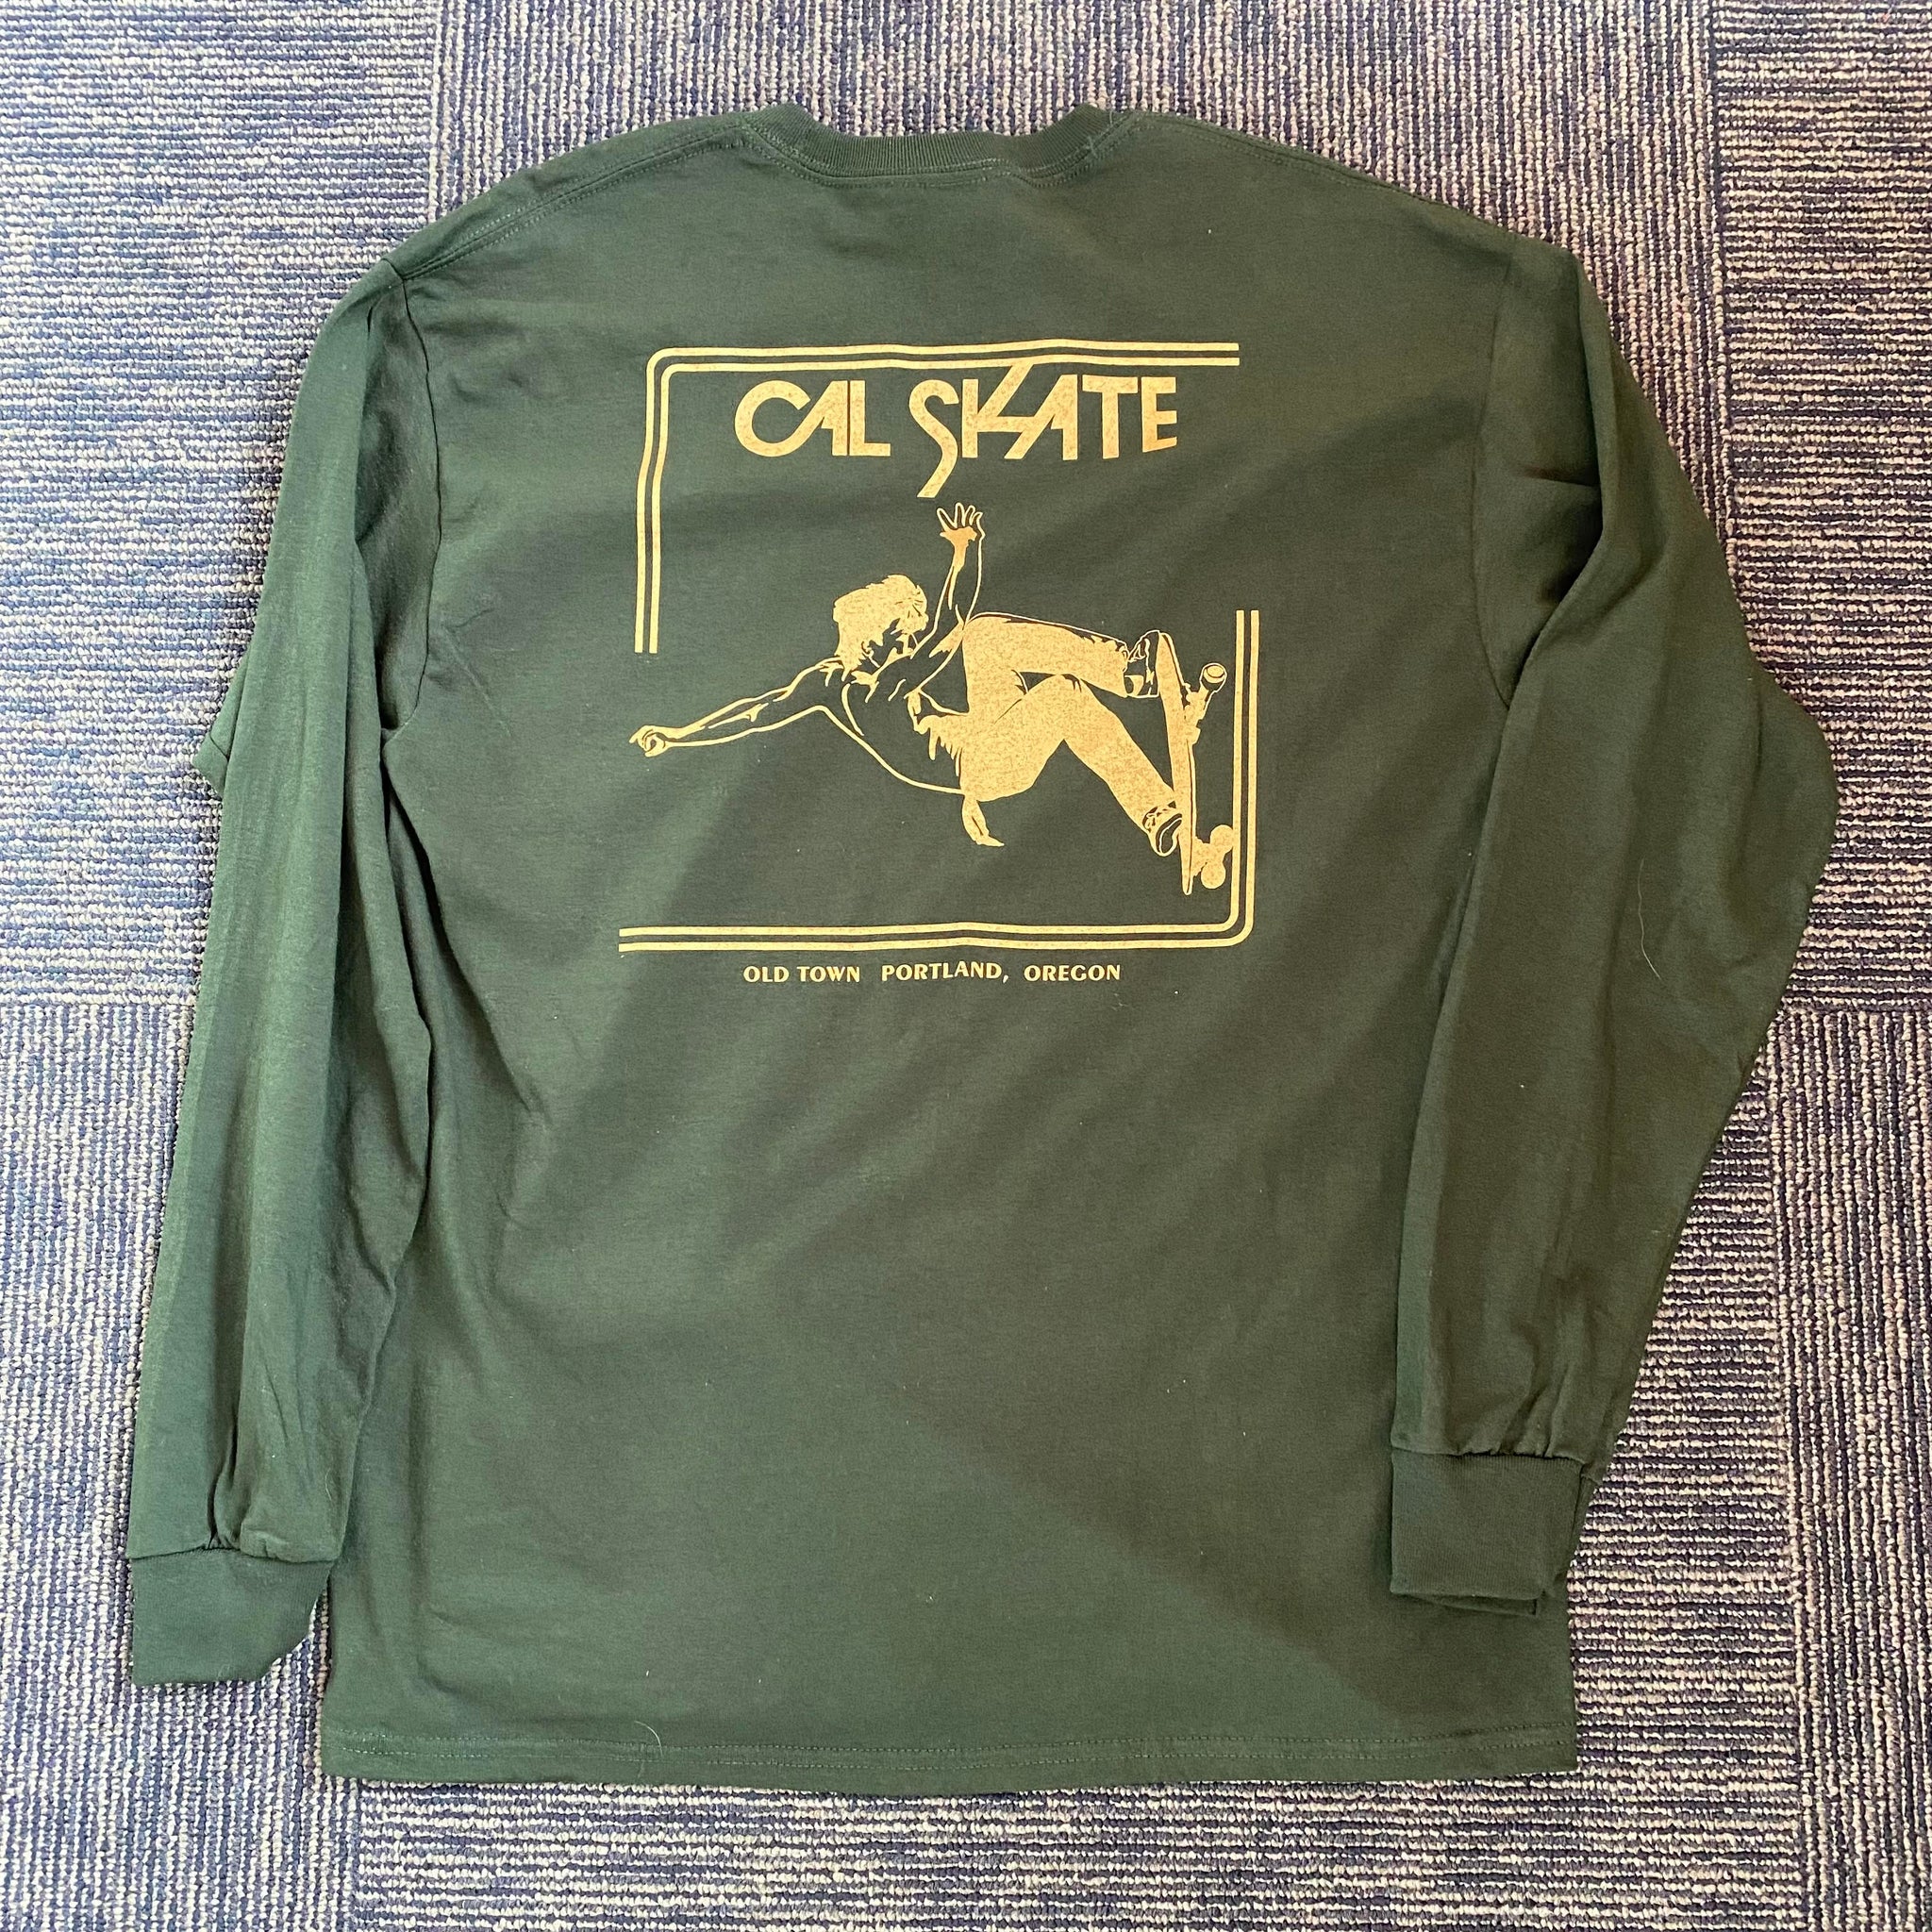 Cal Skate "Slasher-Long Sleeve" Forest/Gold